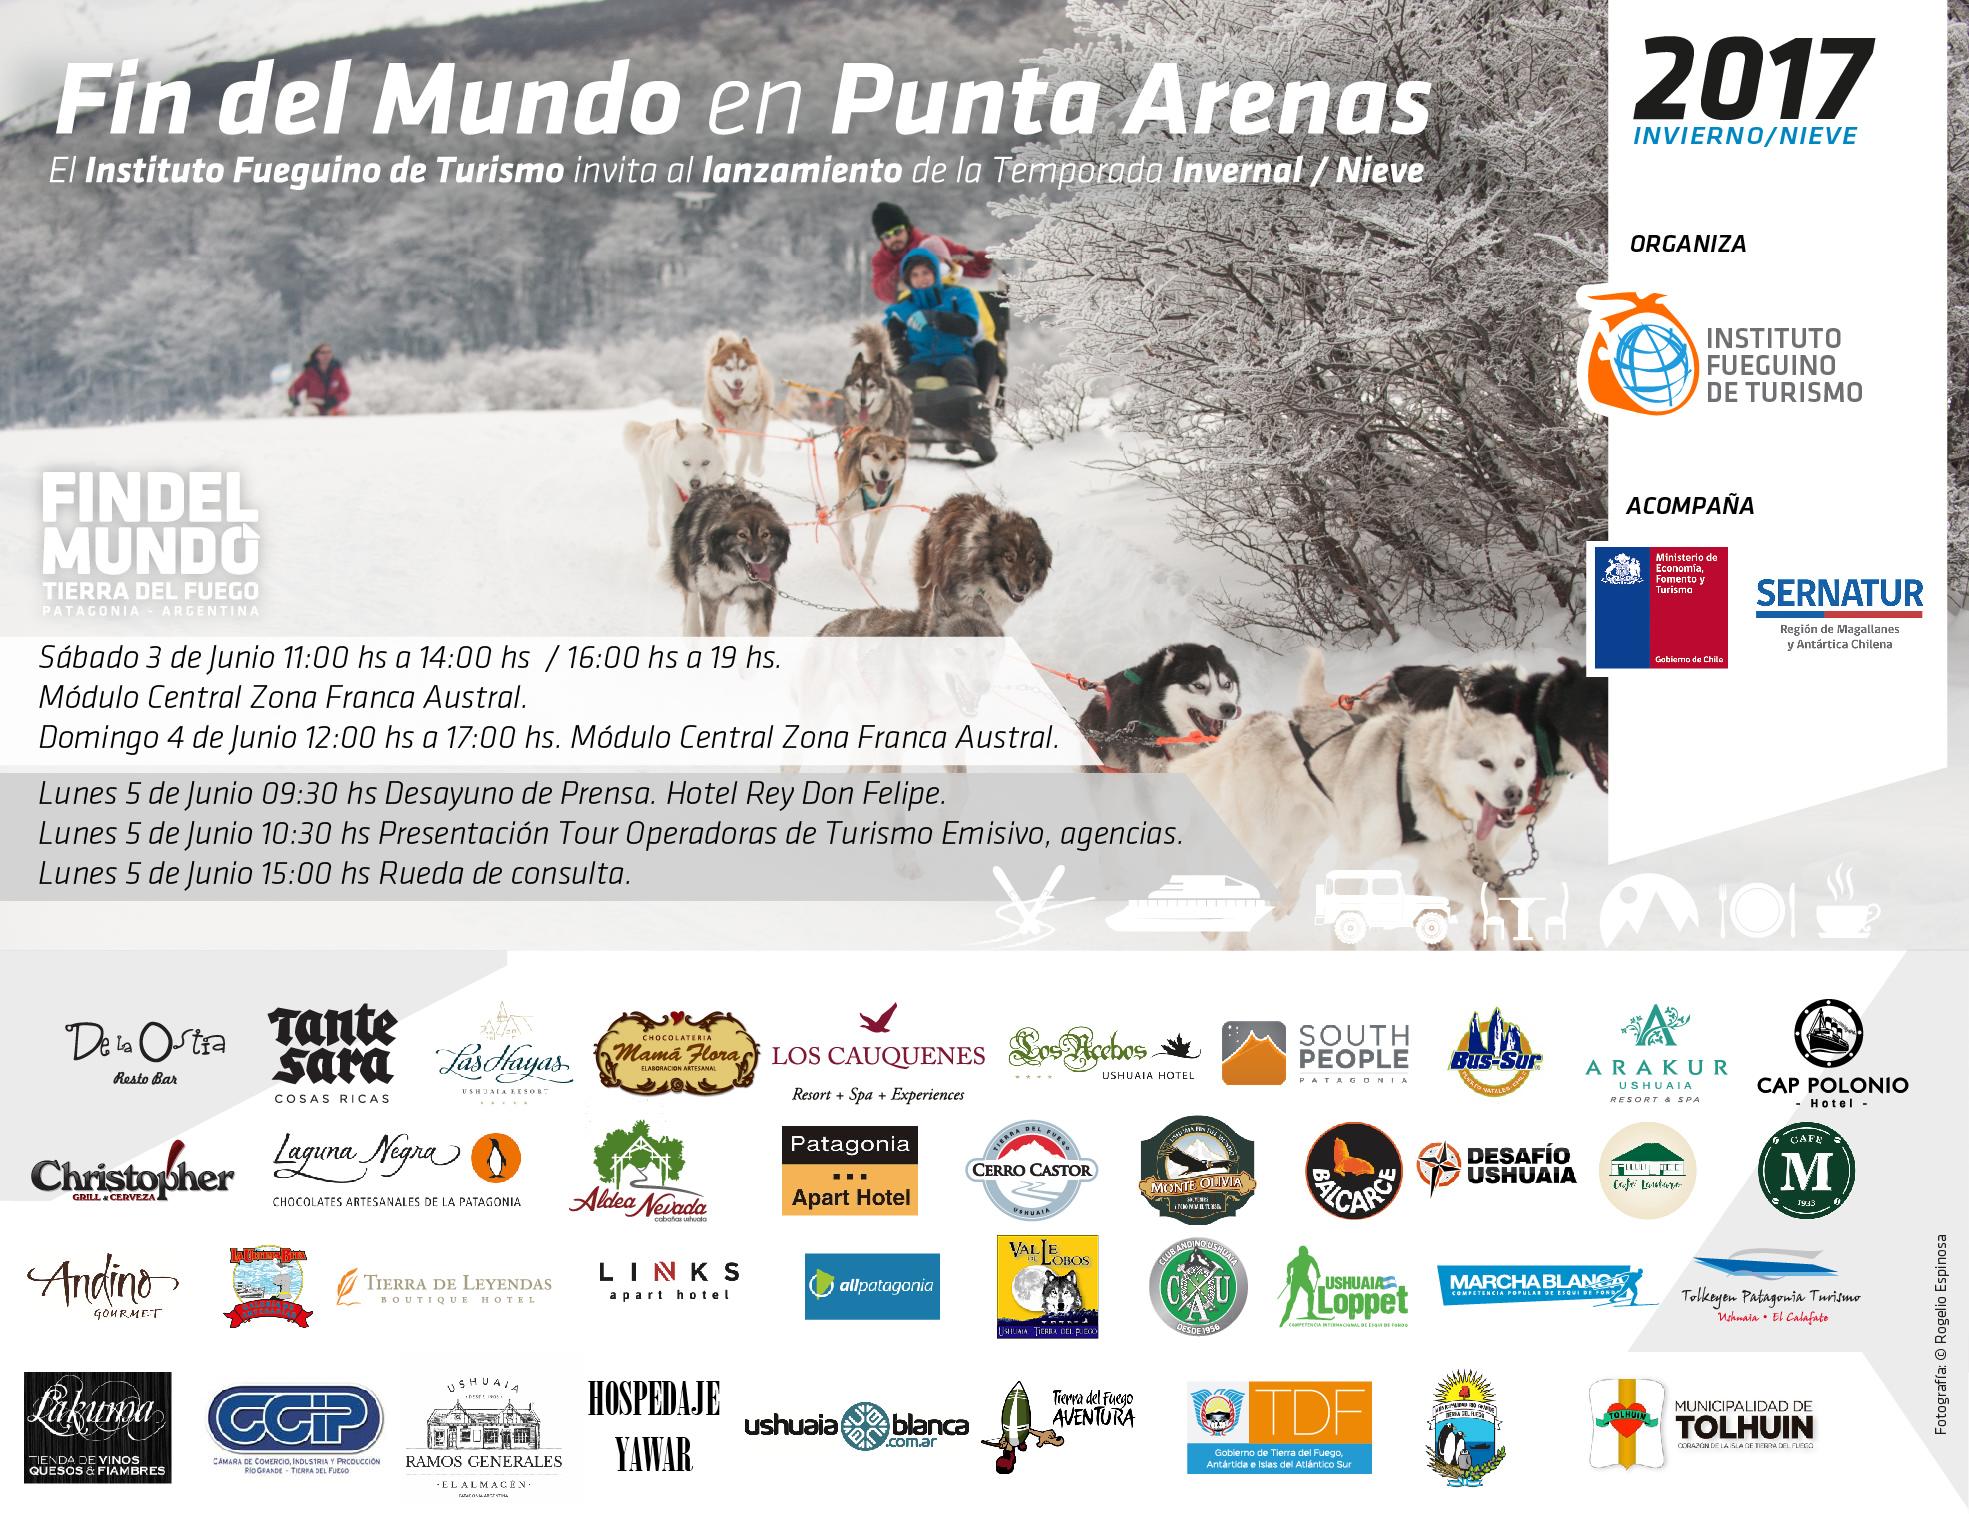 Promoción turística de la Patagonia argentina en Punta Arenas